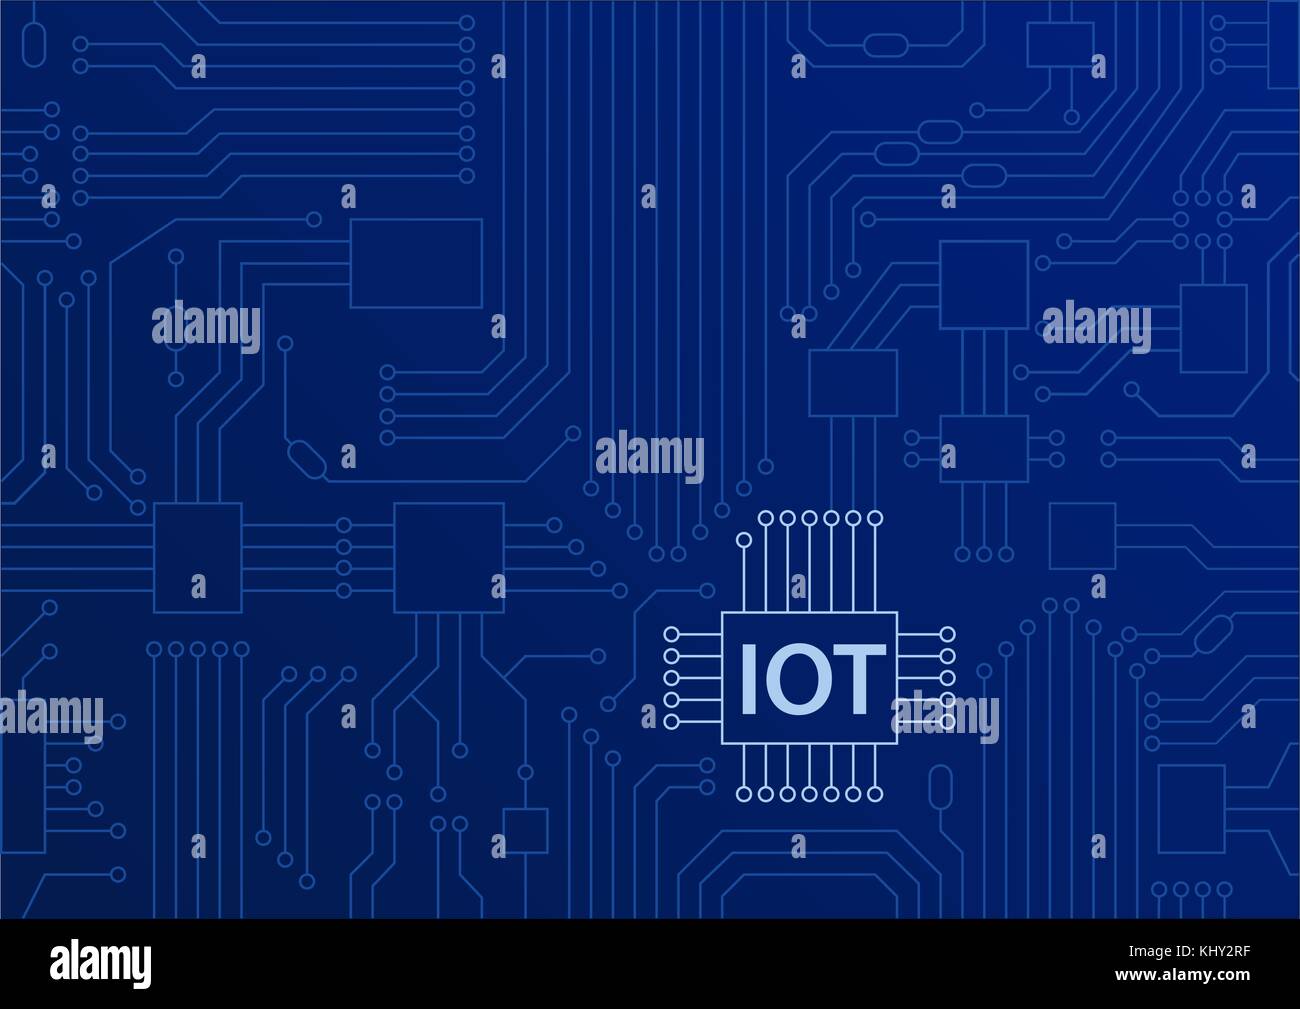 Iot texte apparaissant sur la carte à circuits imprimés, fond bleu. internet des objets concept vector illustration Illustration de Vecteur